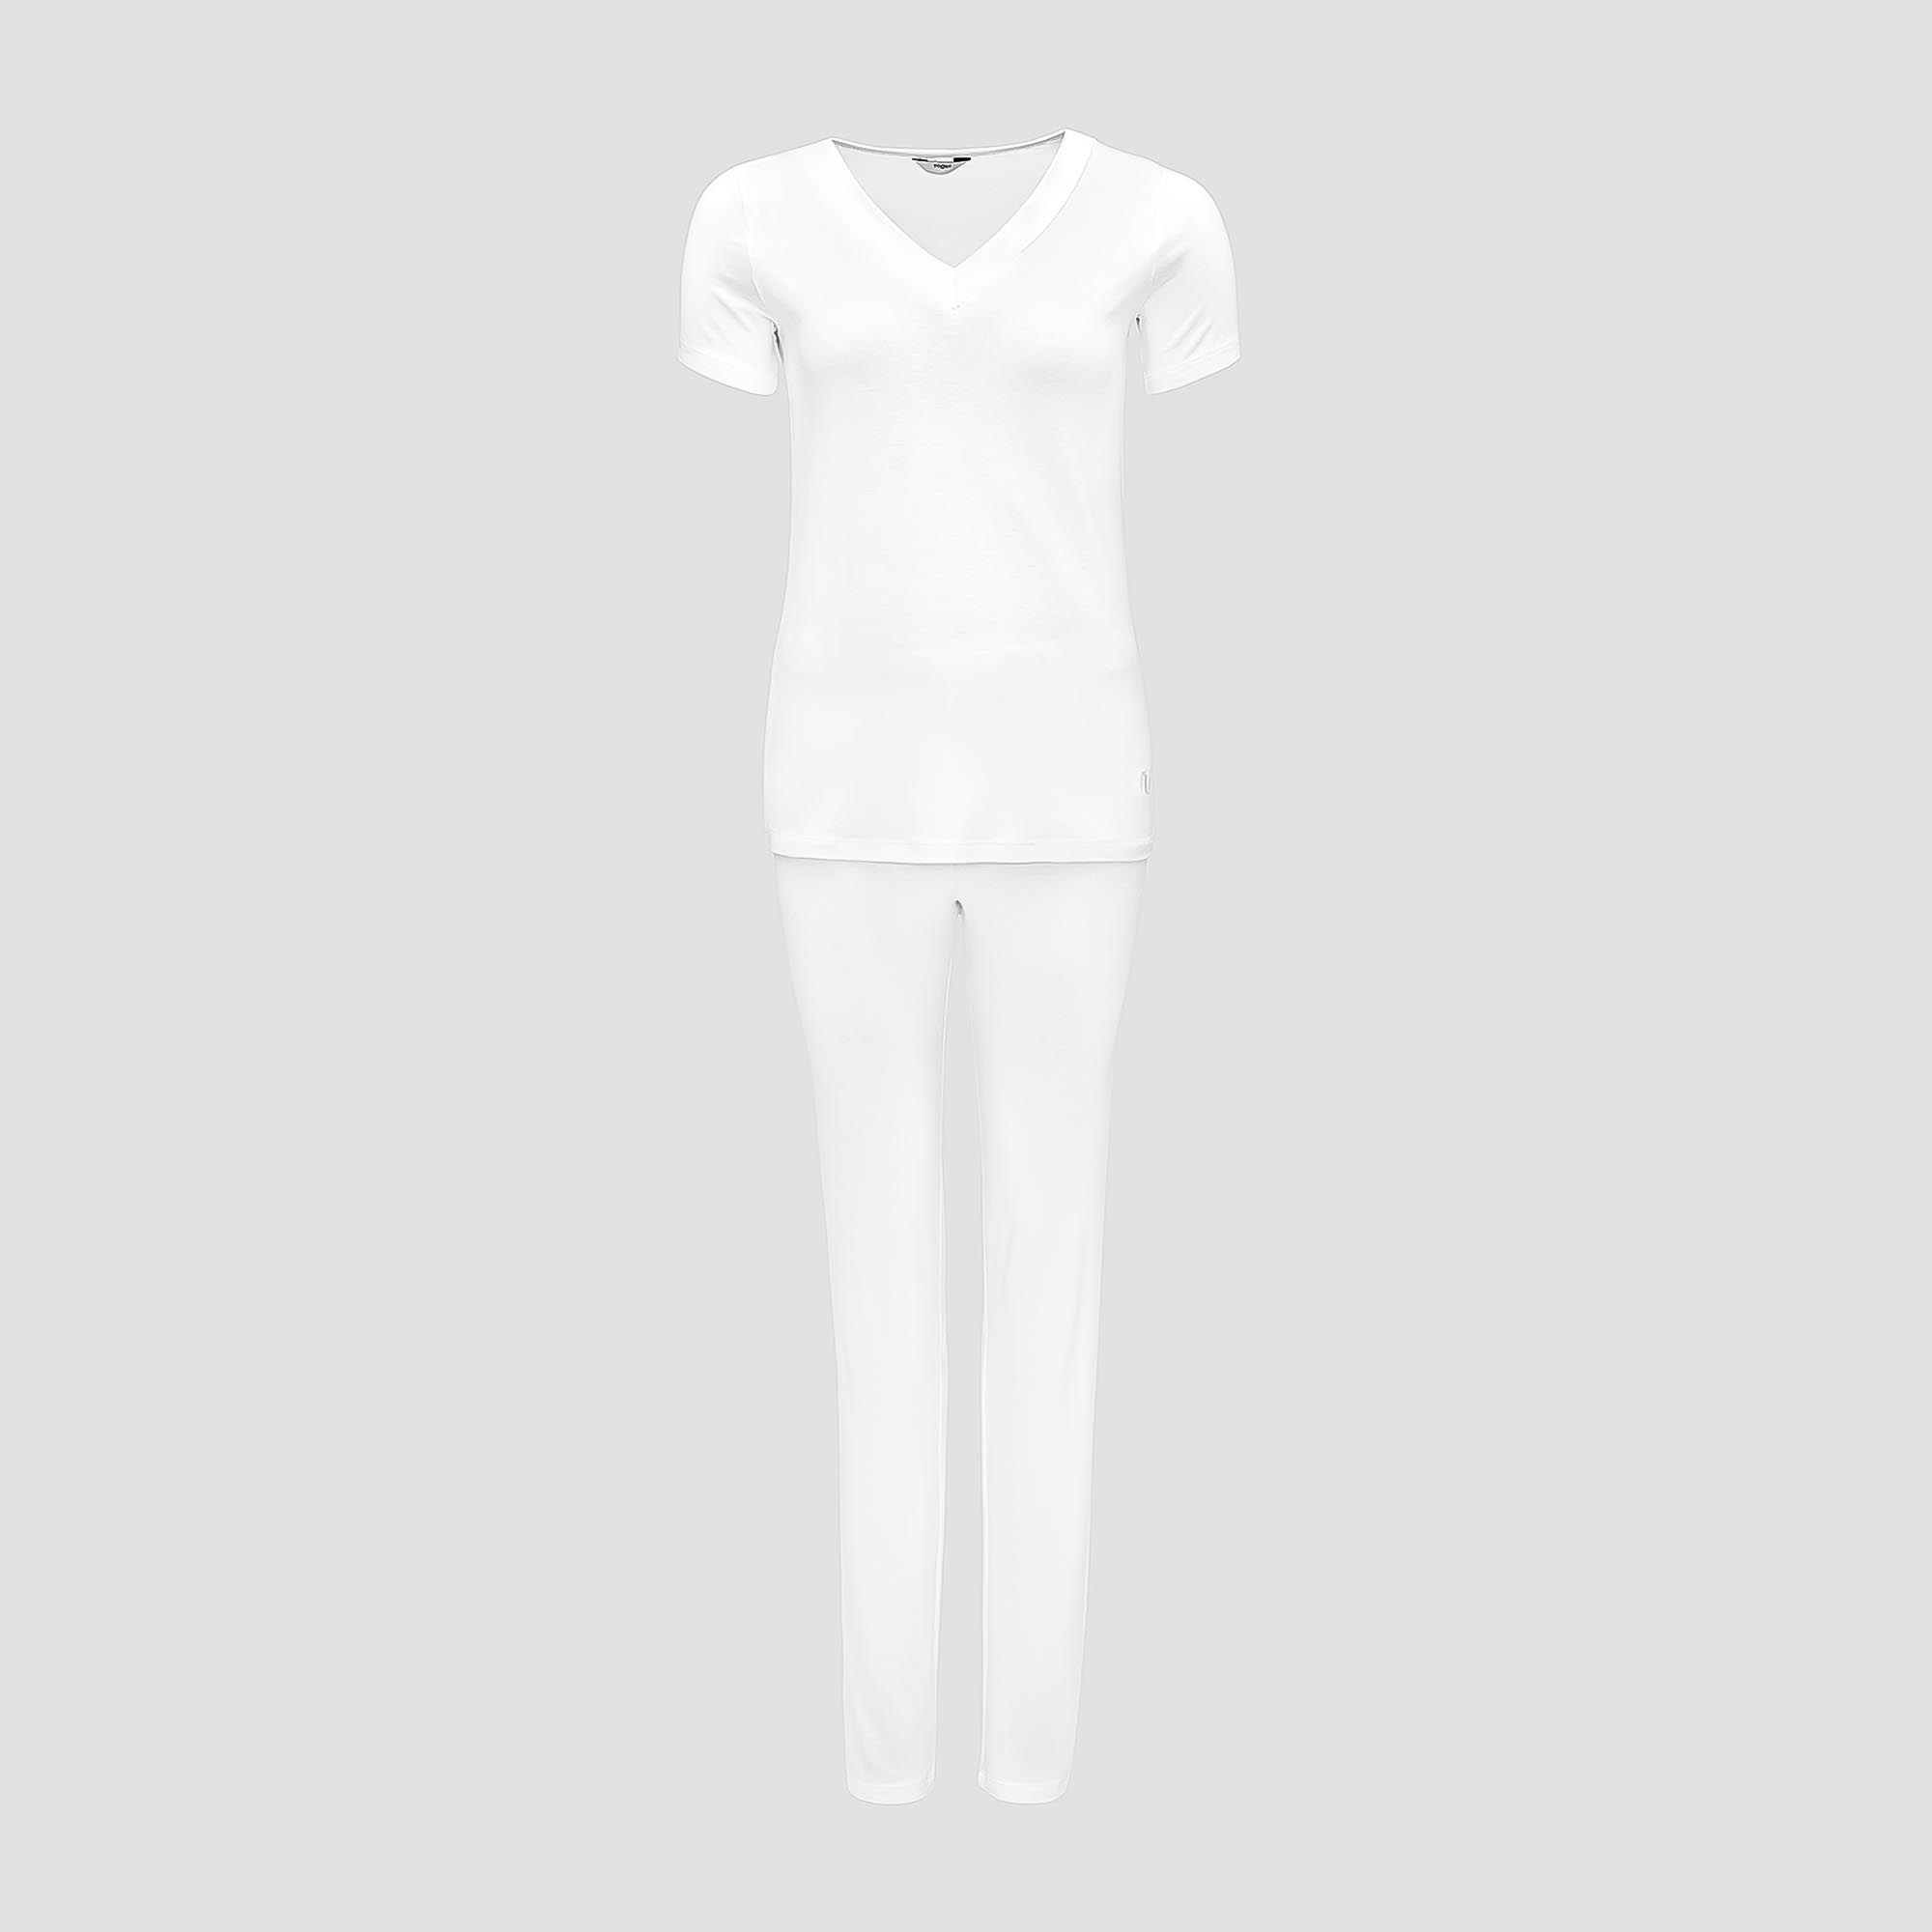 Пижама Togas Ингелла белая женская XXL(52) 2 предмета жен пижама с шортами инь янь белый р 48